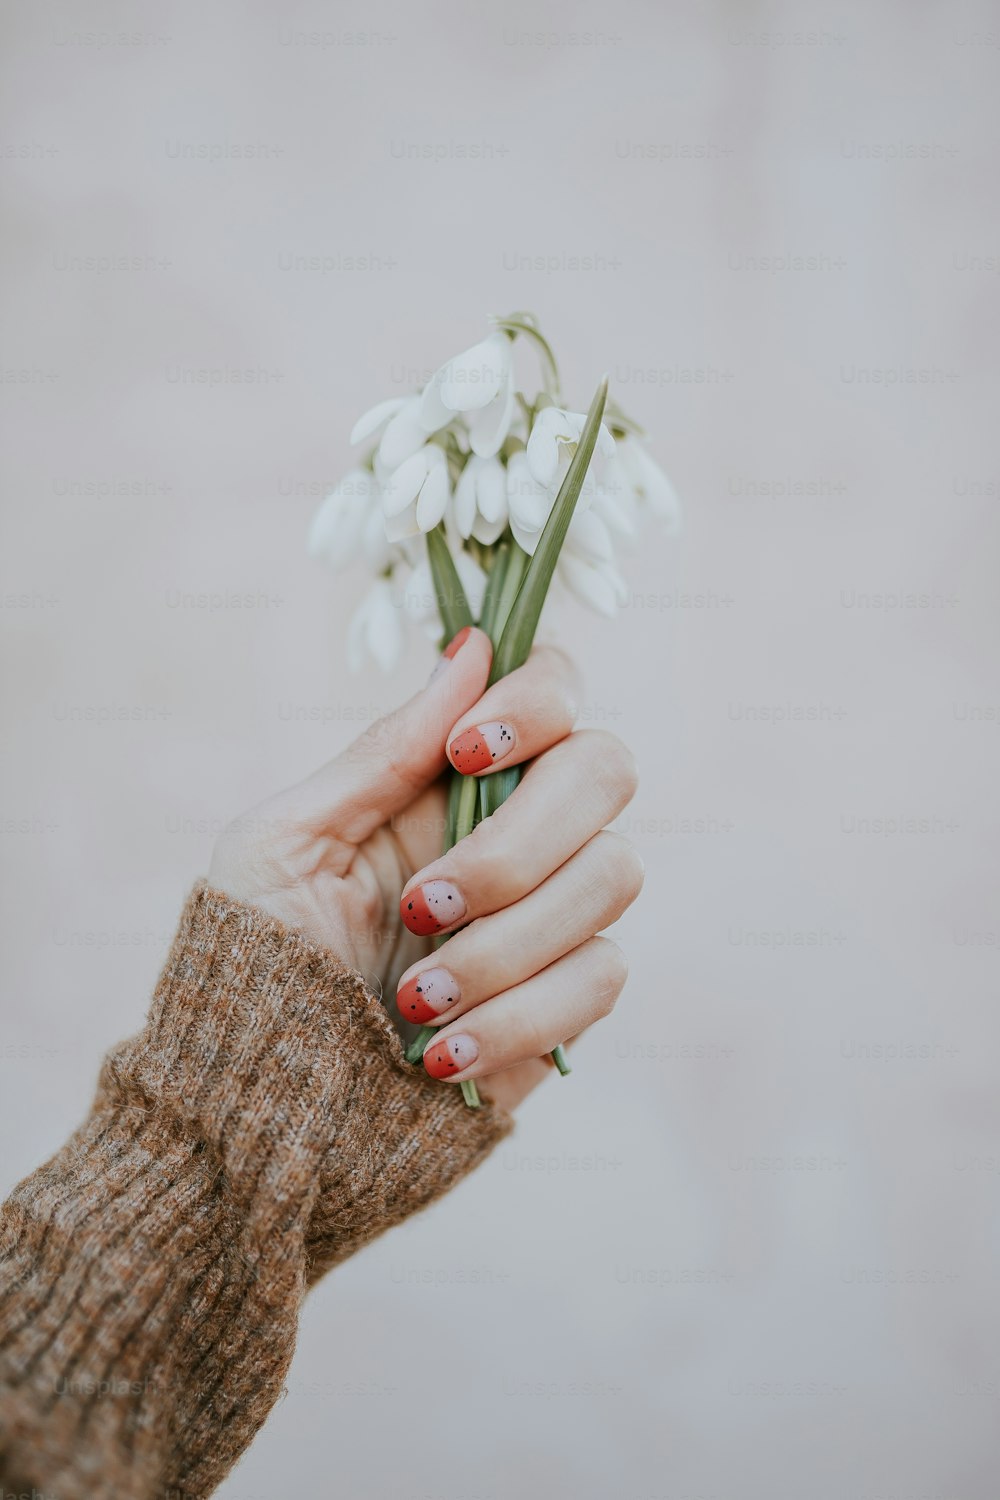 una persona sosteniendo una flor blanca